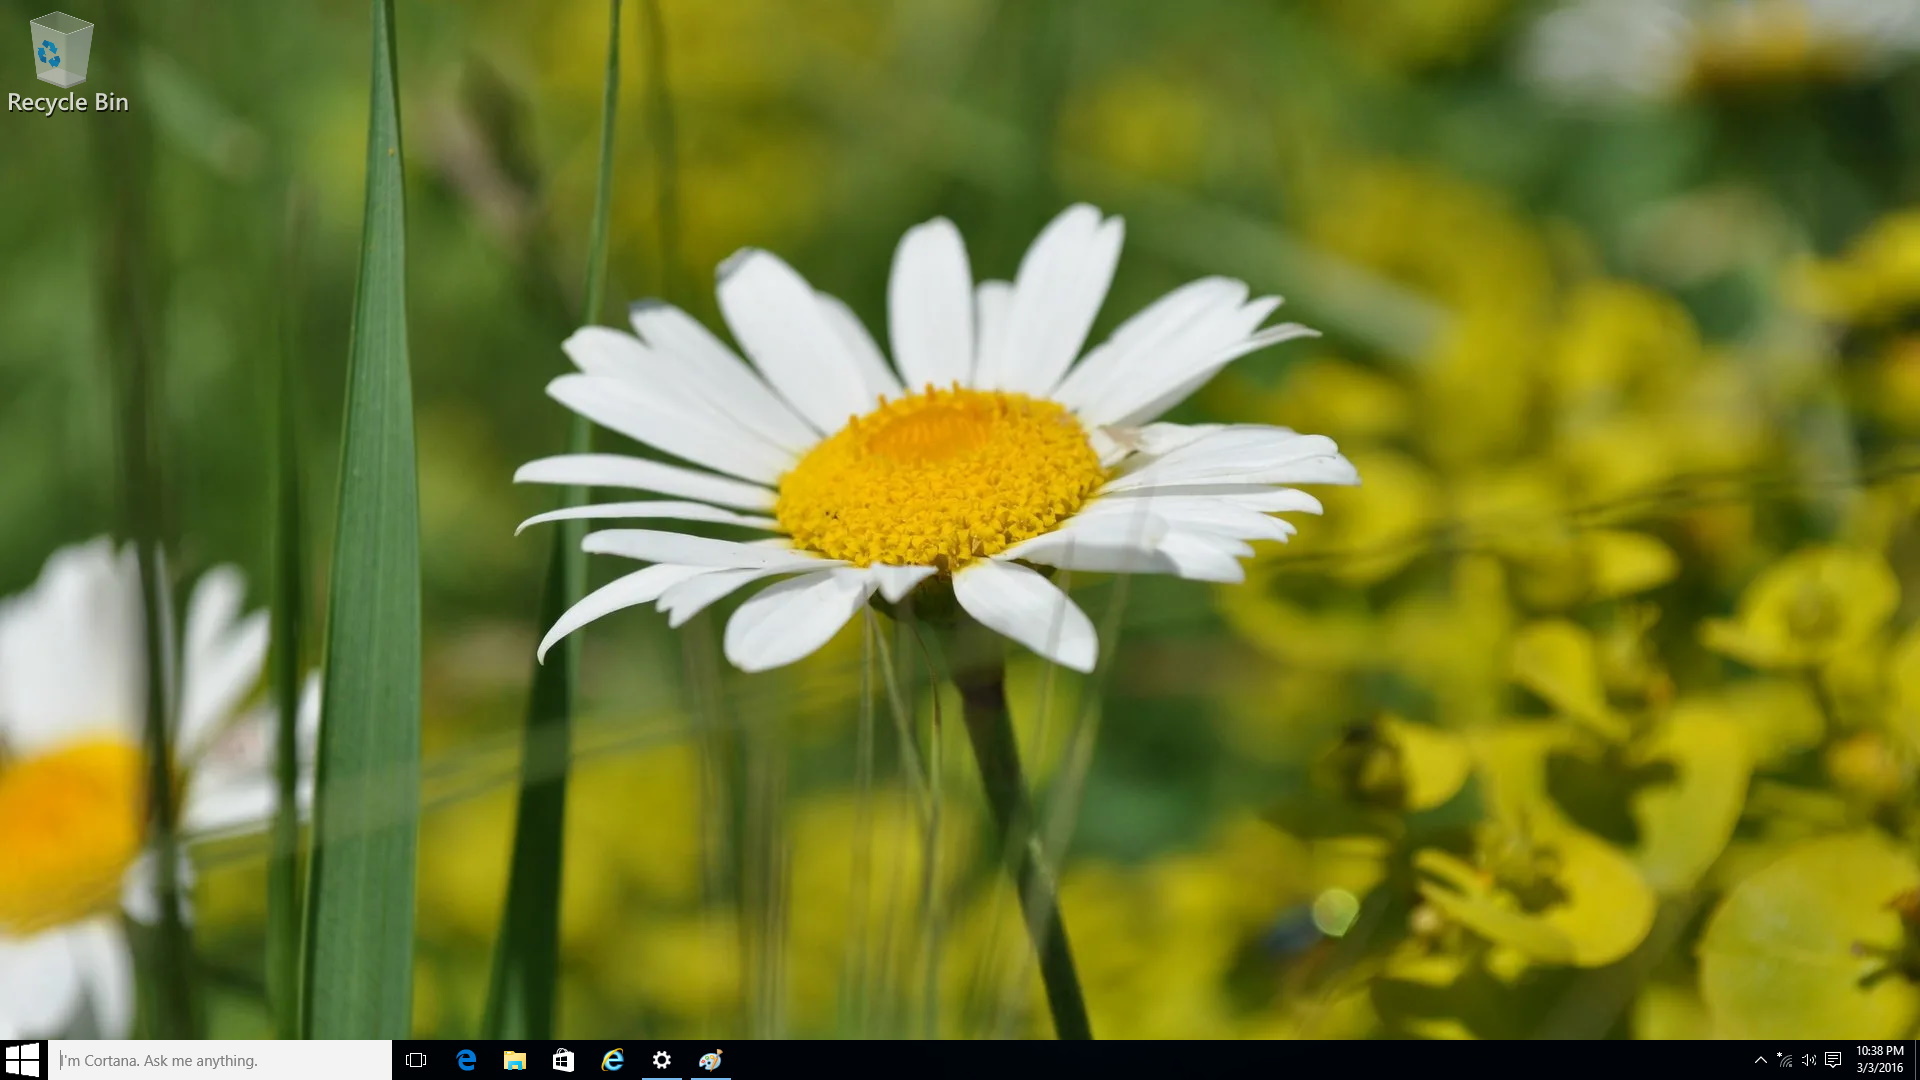 windows 8 default desktop wallpaper